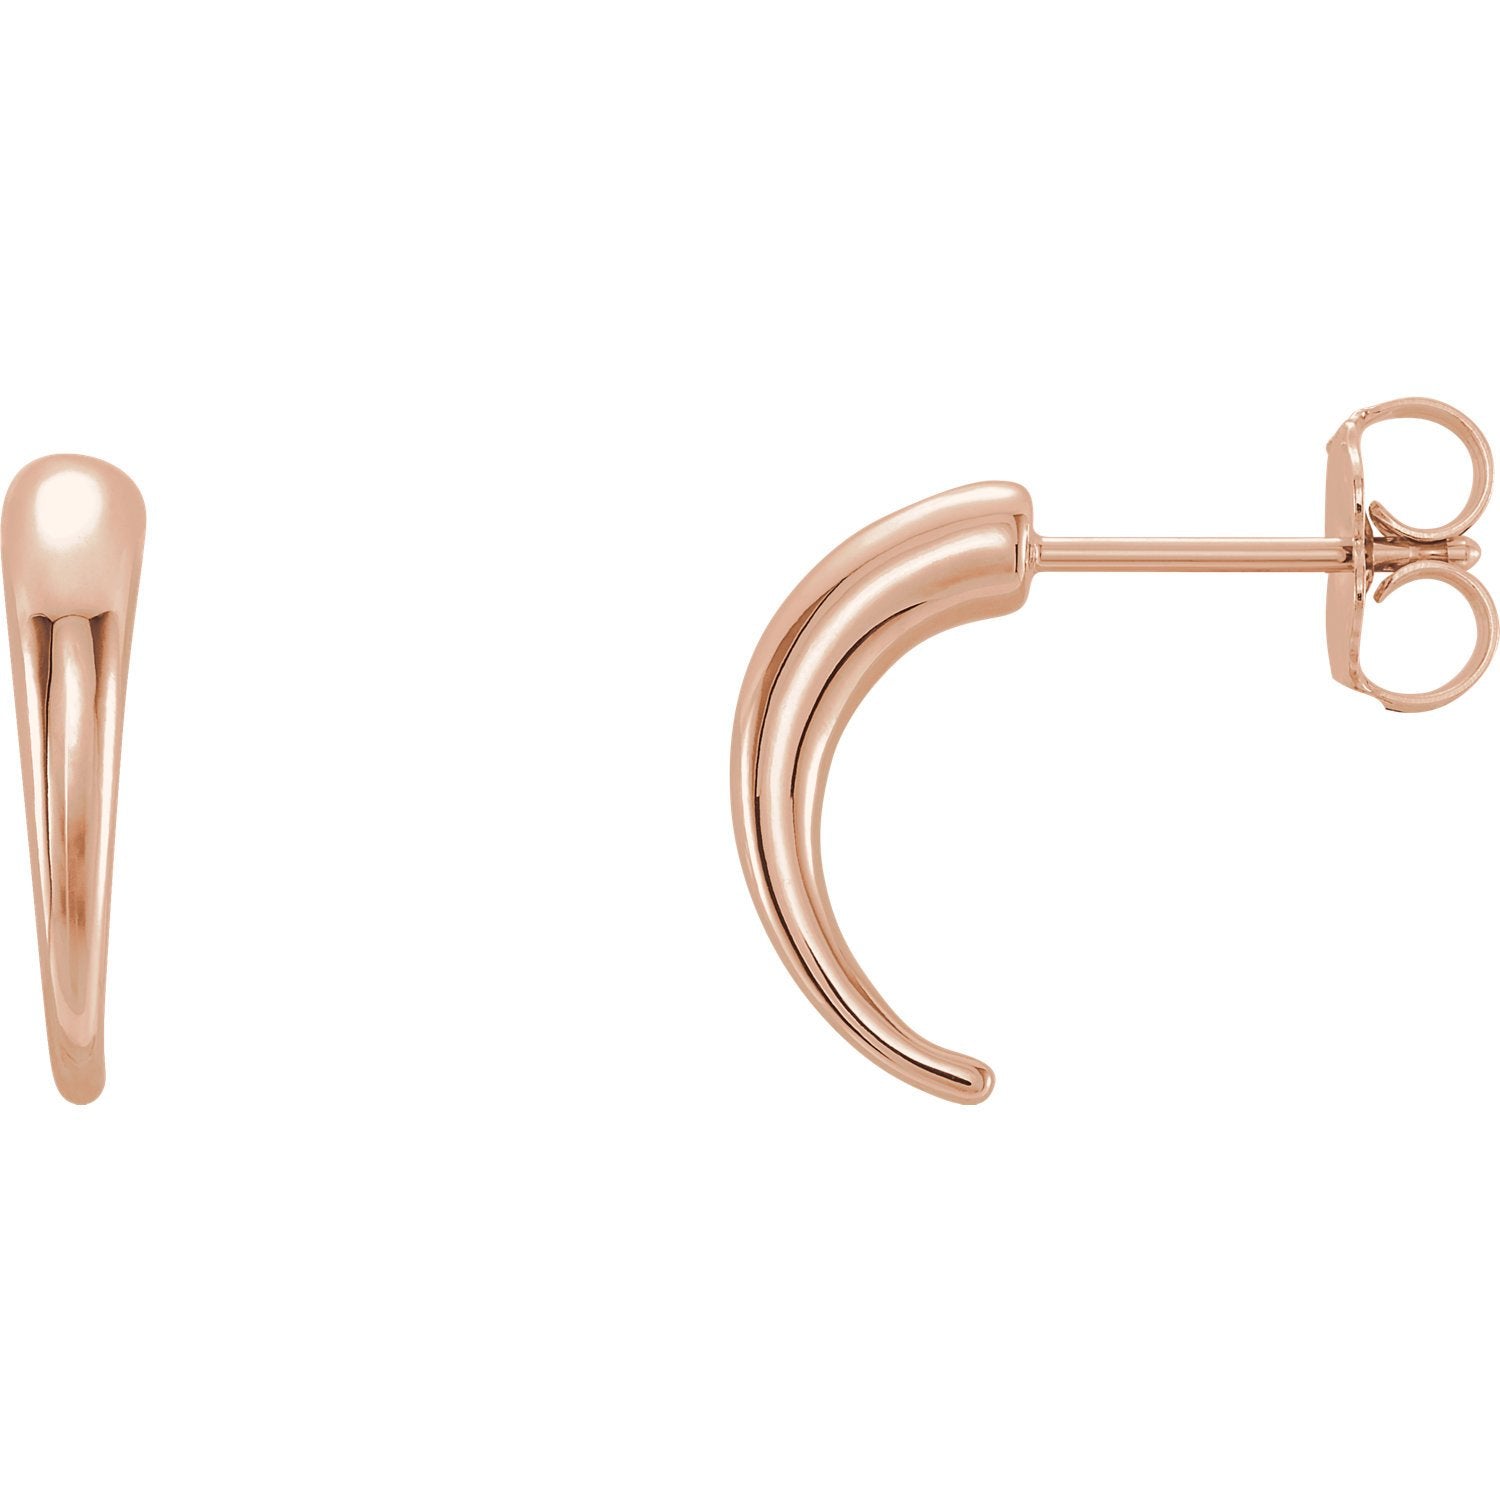 Horn Shaped J-Hoop Earrings - 14K Rose Gold